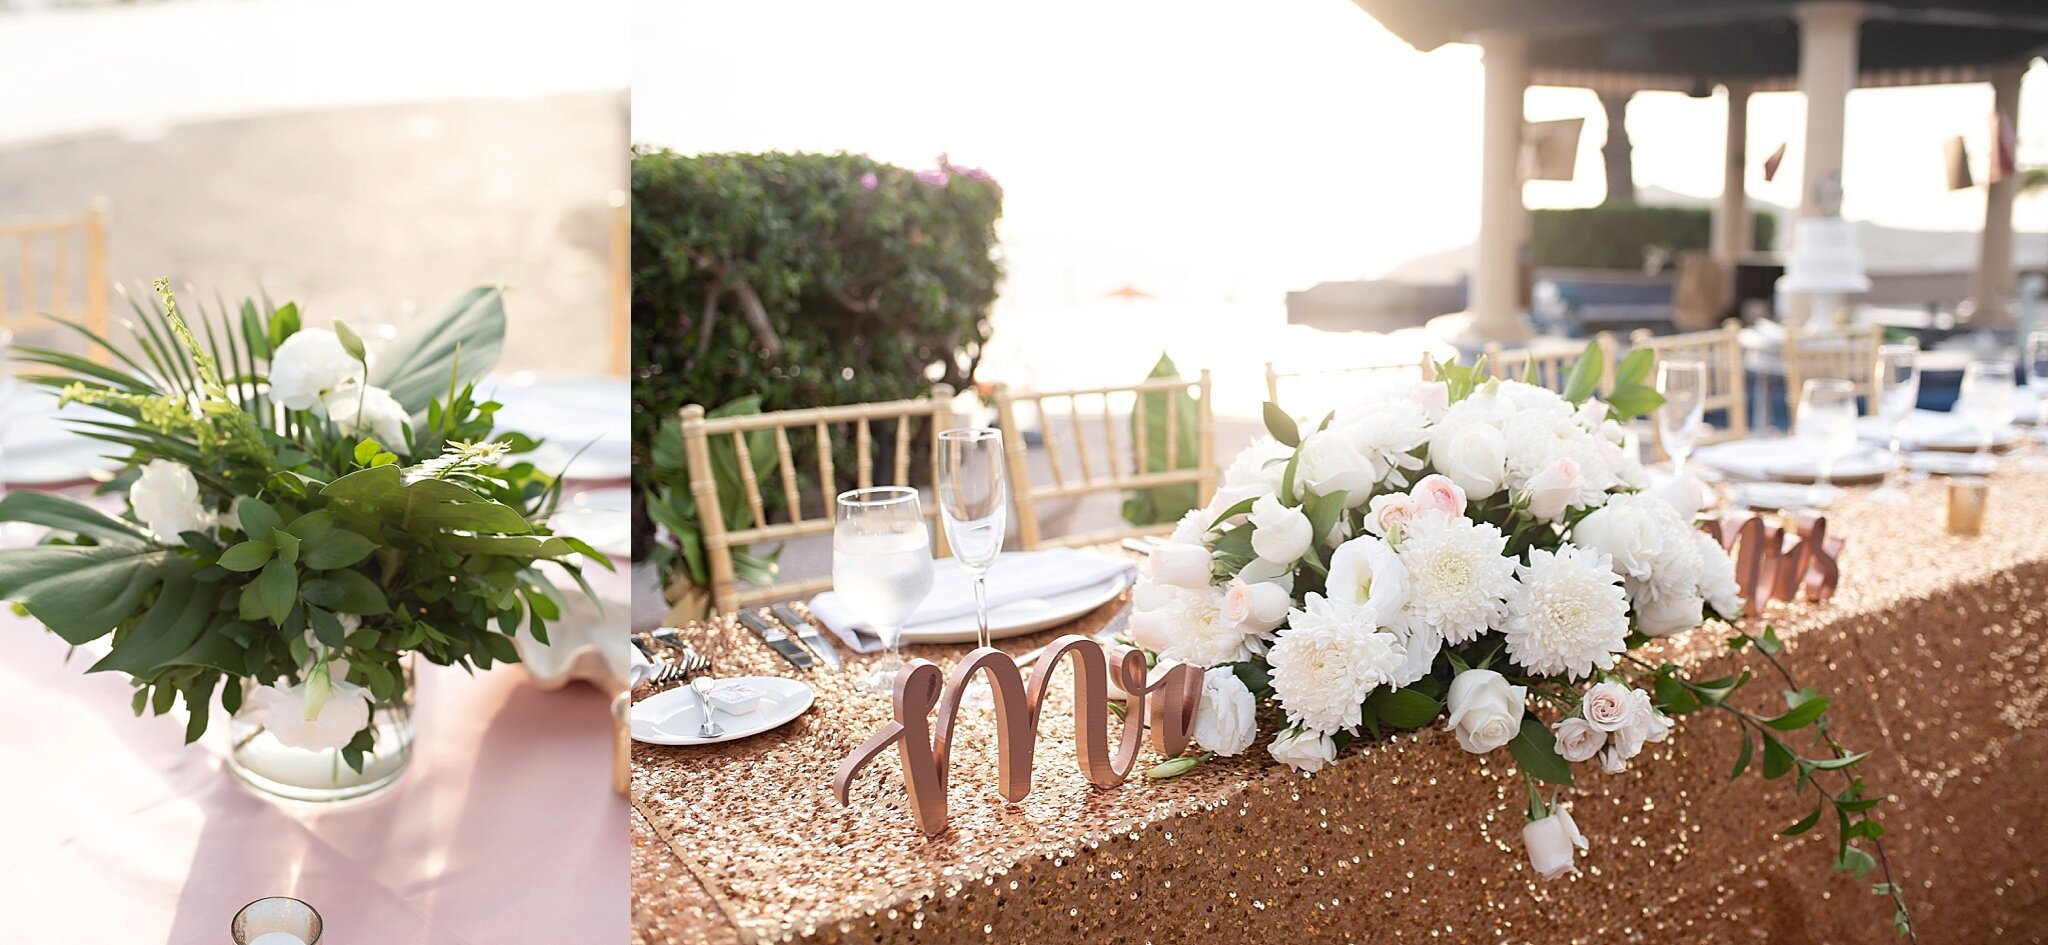 head table rooftop poolside wedding reception destination pueblo bonito sunset beach mexico